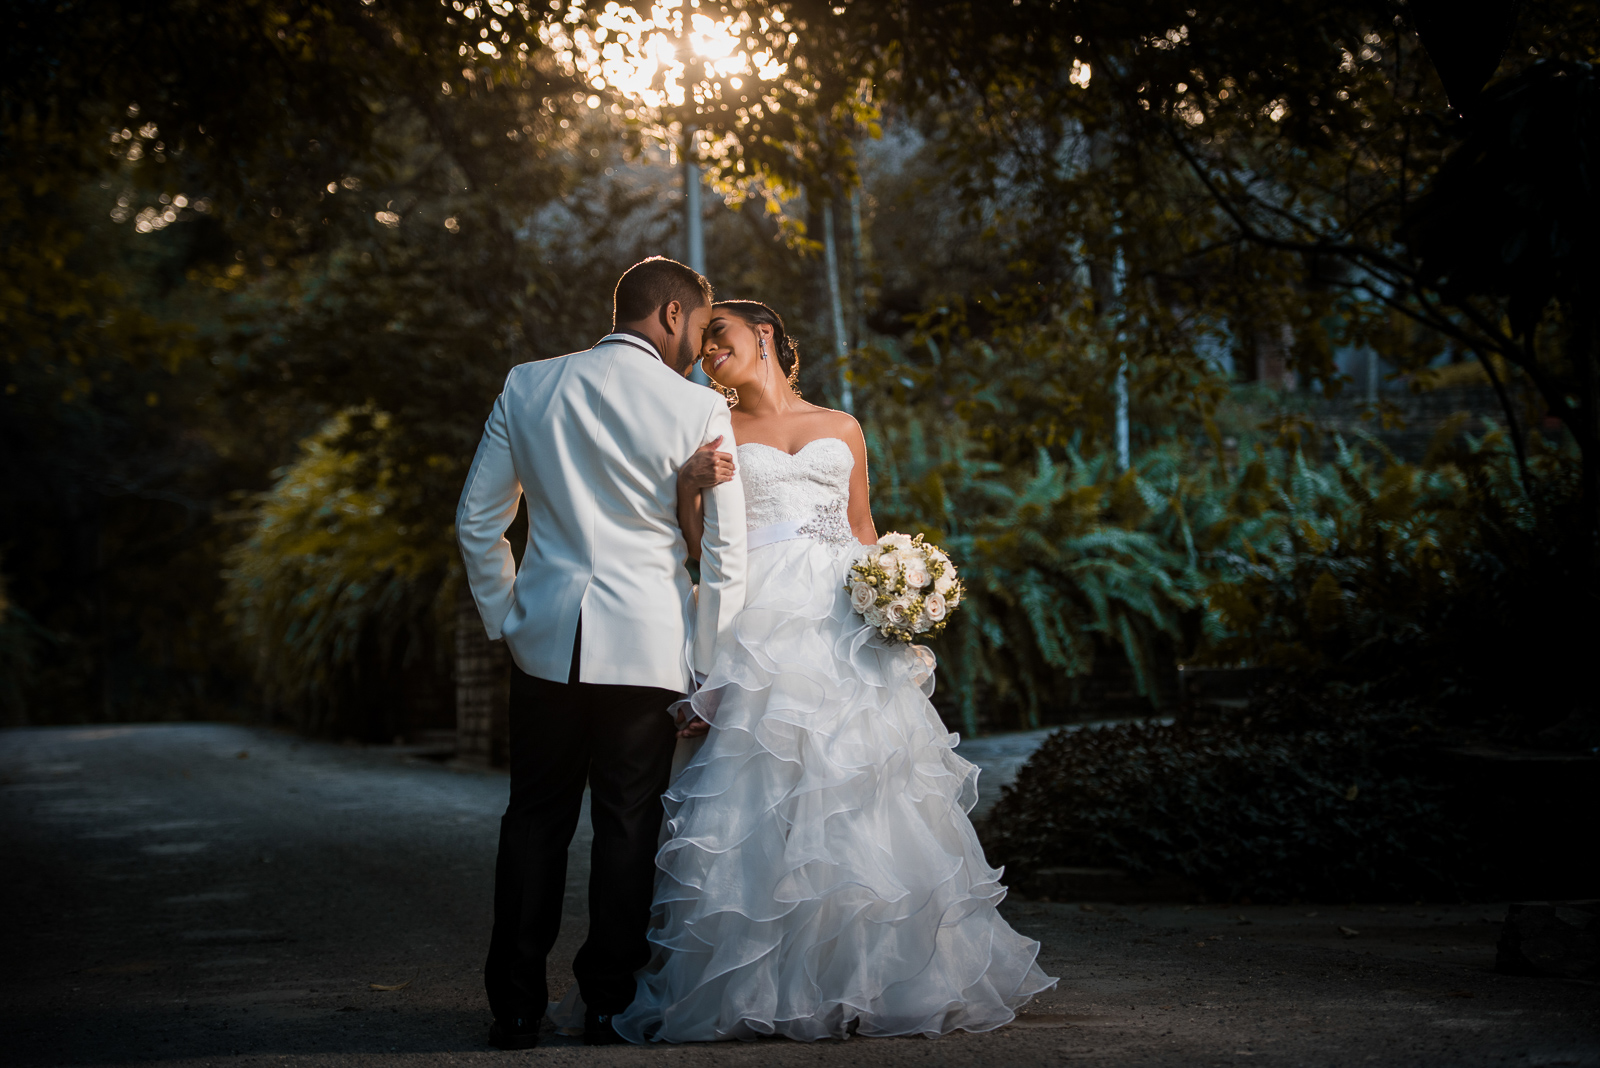 Sesion de novios o pre boda de Mariela y Genaro en el Jardin Botanico de Santo Domingo Republica Dominicana